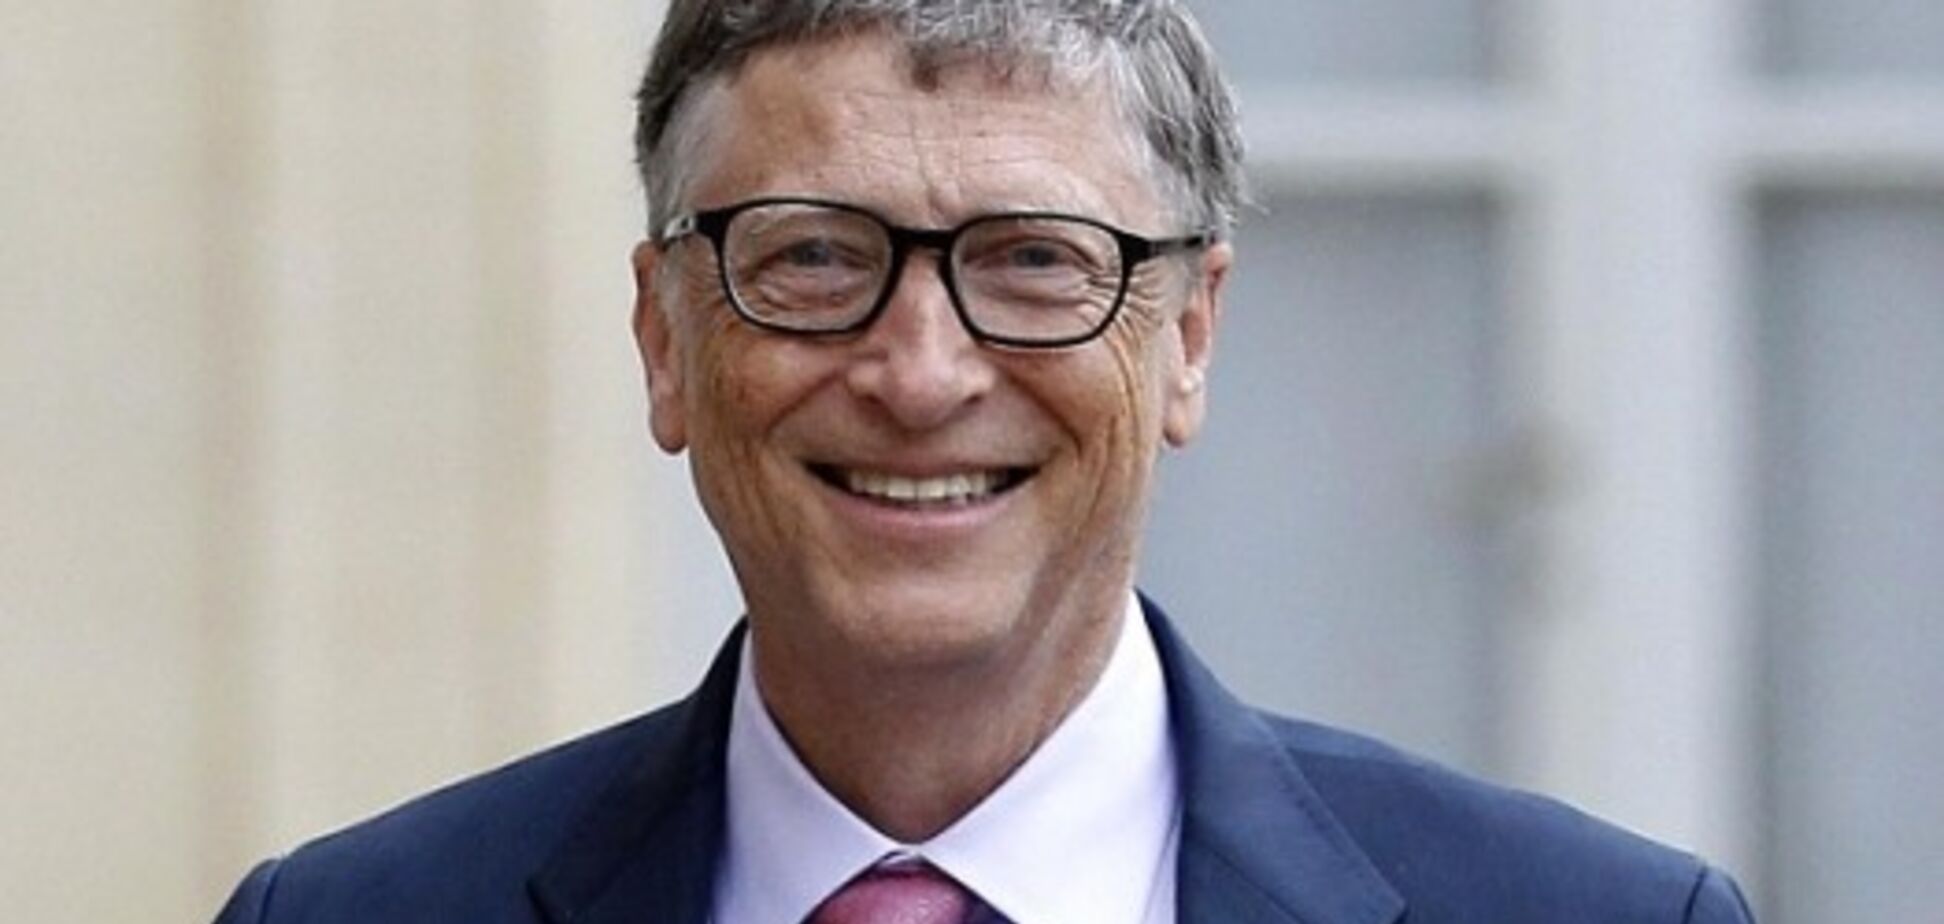 Білл Гейтс втратив місце у списку найбагатших людей світу